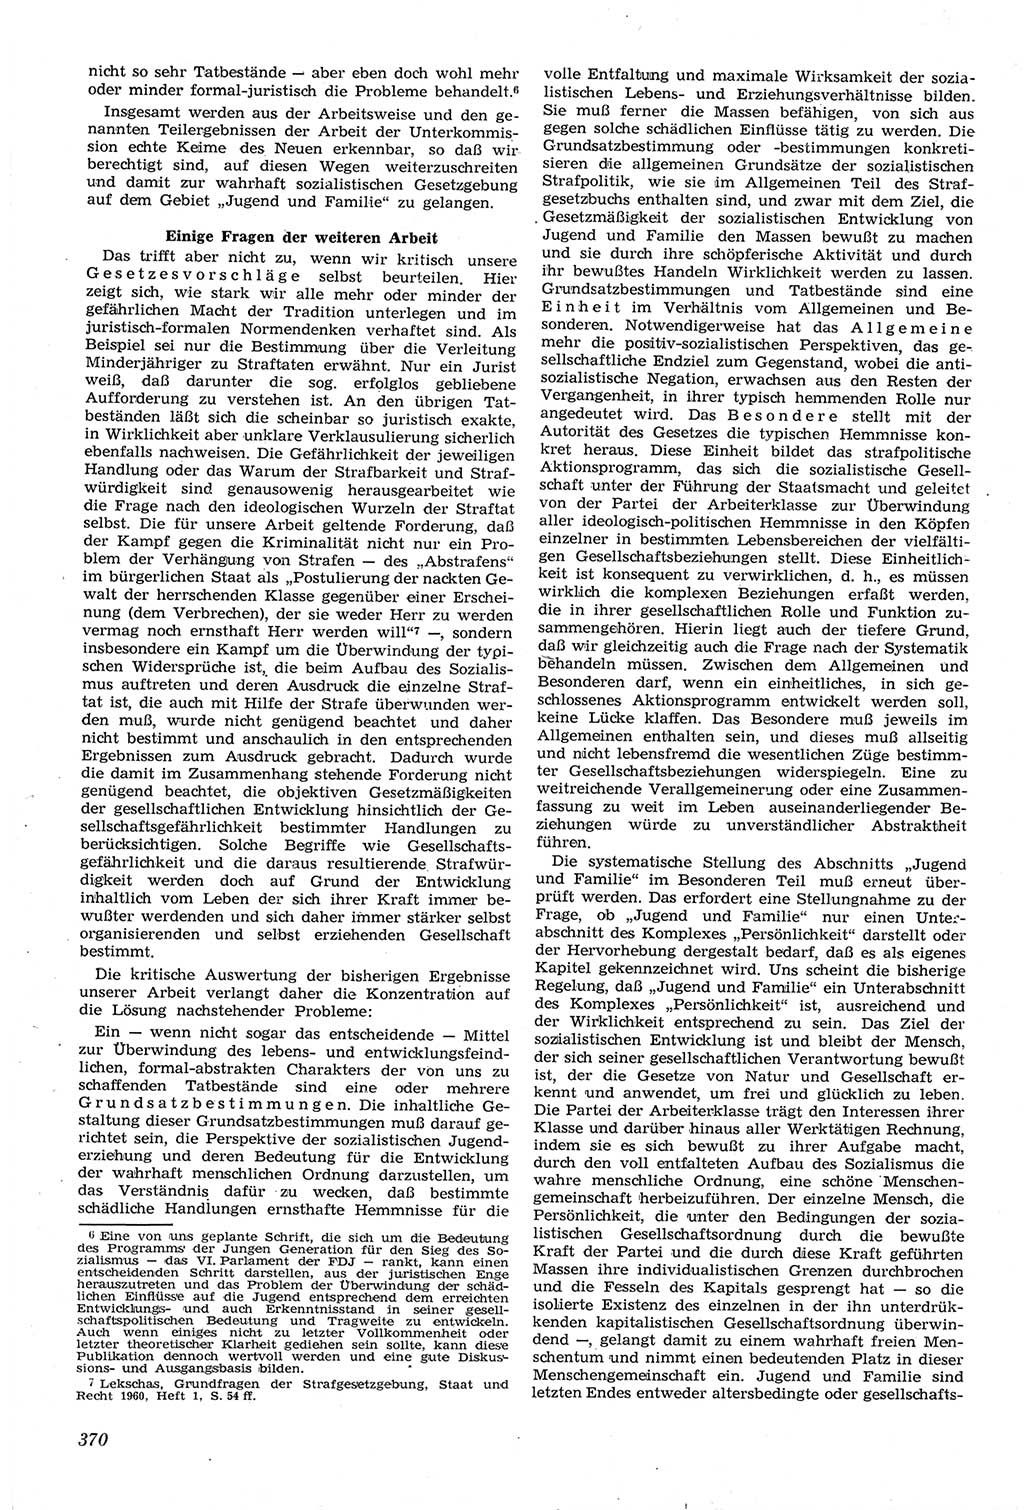 Neue Justiz (NJ), Zeitschrift für Recht und Rechtswissenschaft [Deutsche Demokratische Republik (DDR)], 14. Jahrgang 1960, Seite 370 (NJ DDR 1960, S. 370)